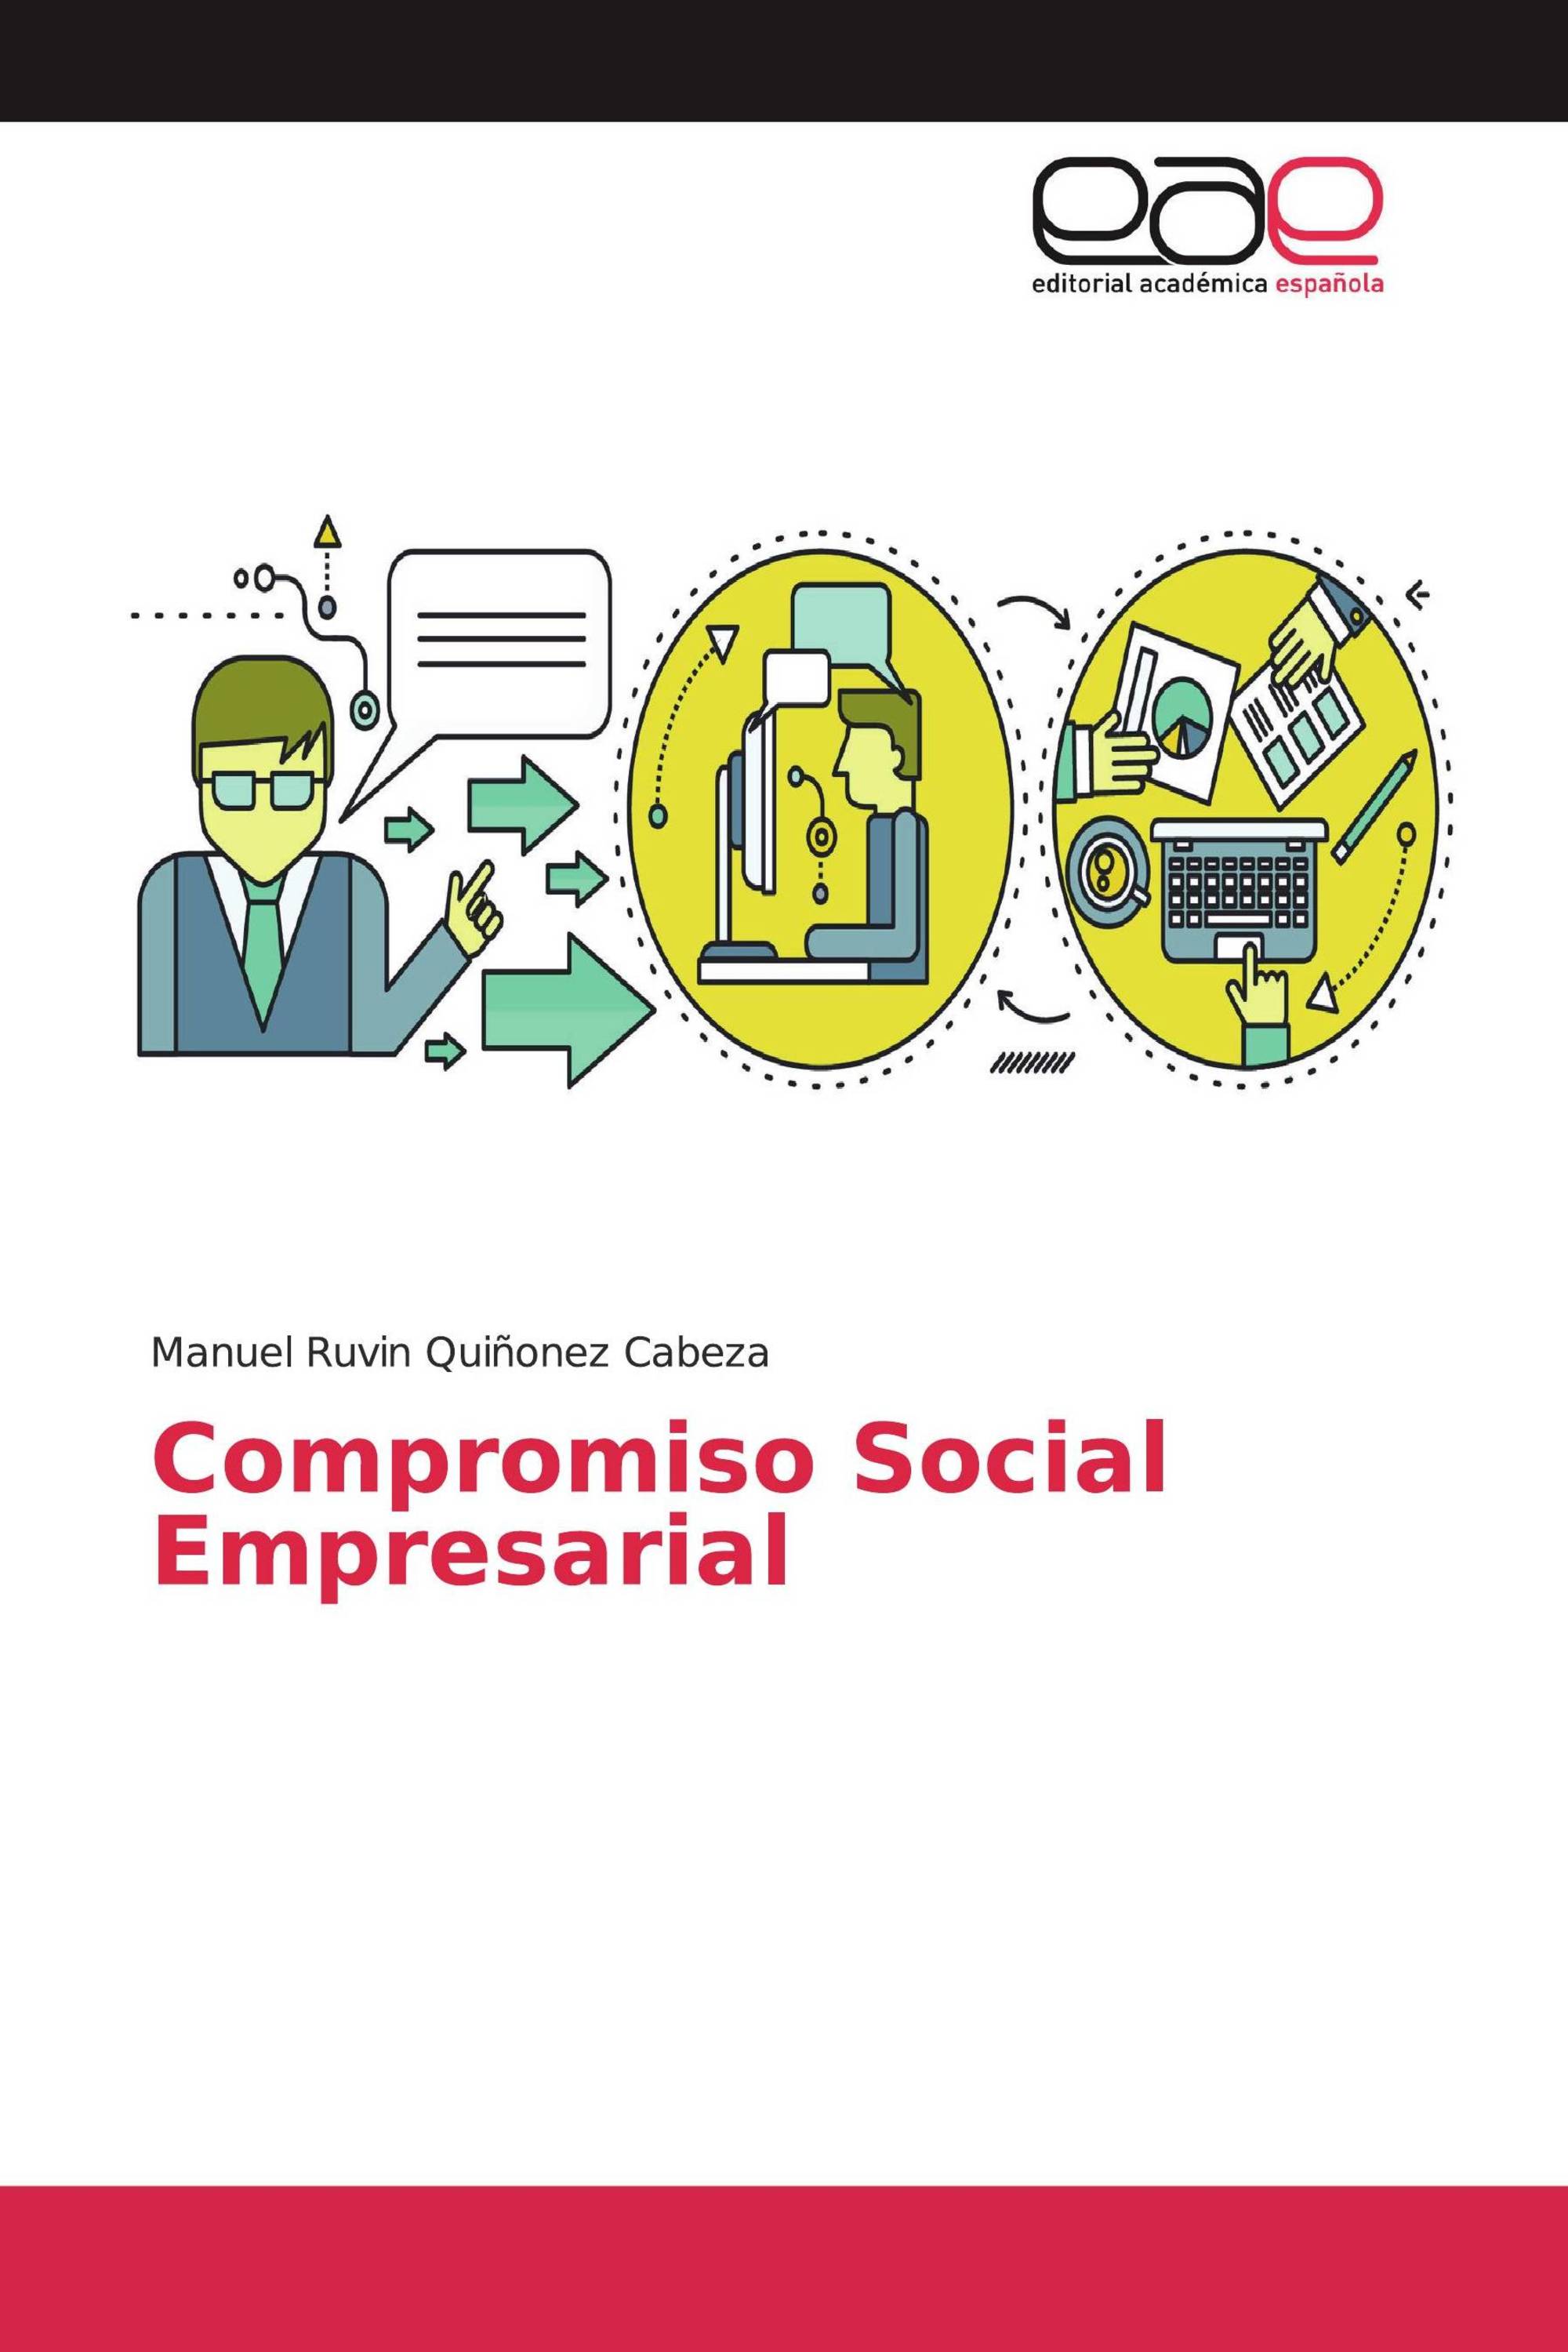 ¿Qué es la Responsabilidad Social Empresarial (RSE)?